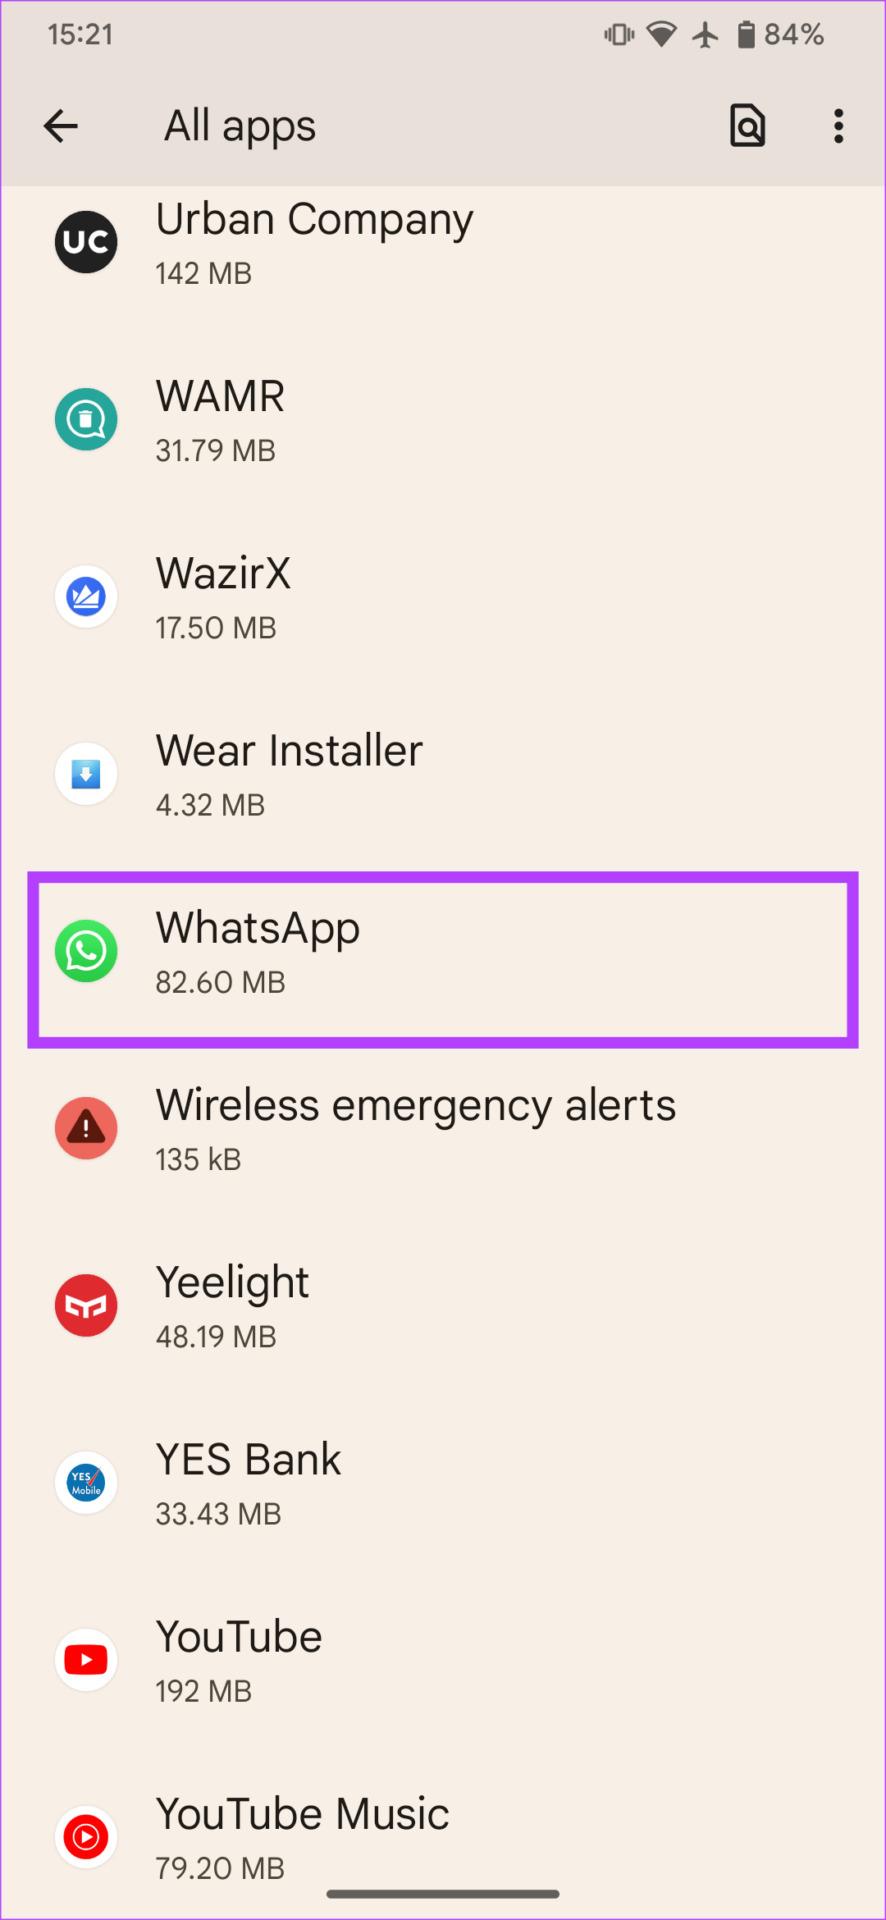 ¿Por qué las fotos se vuelven borrosas en el estado de WhatsApp? 8 formas de solucionarlo